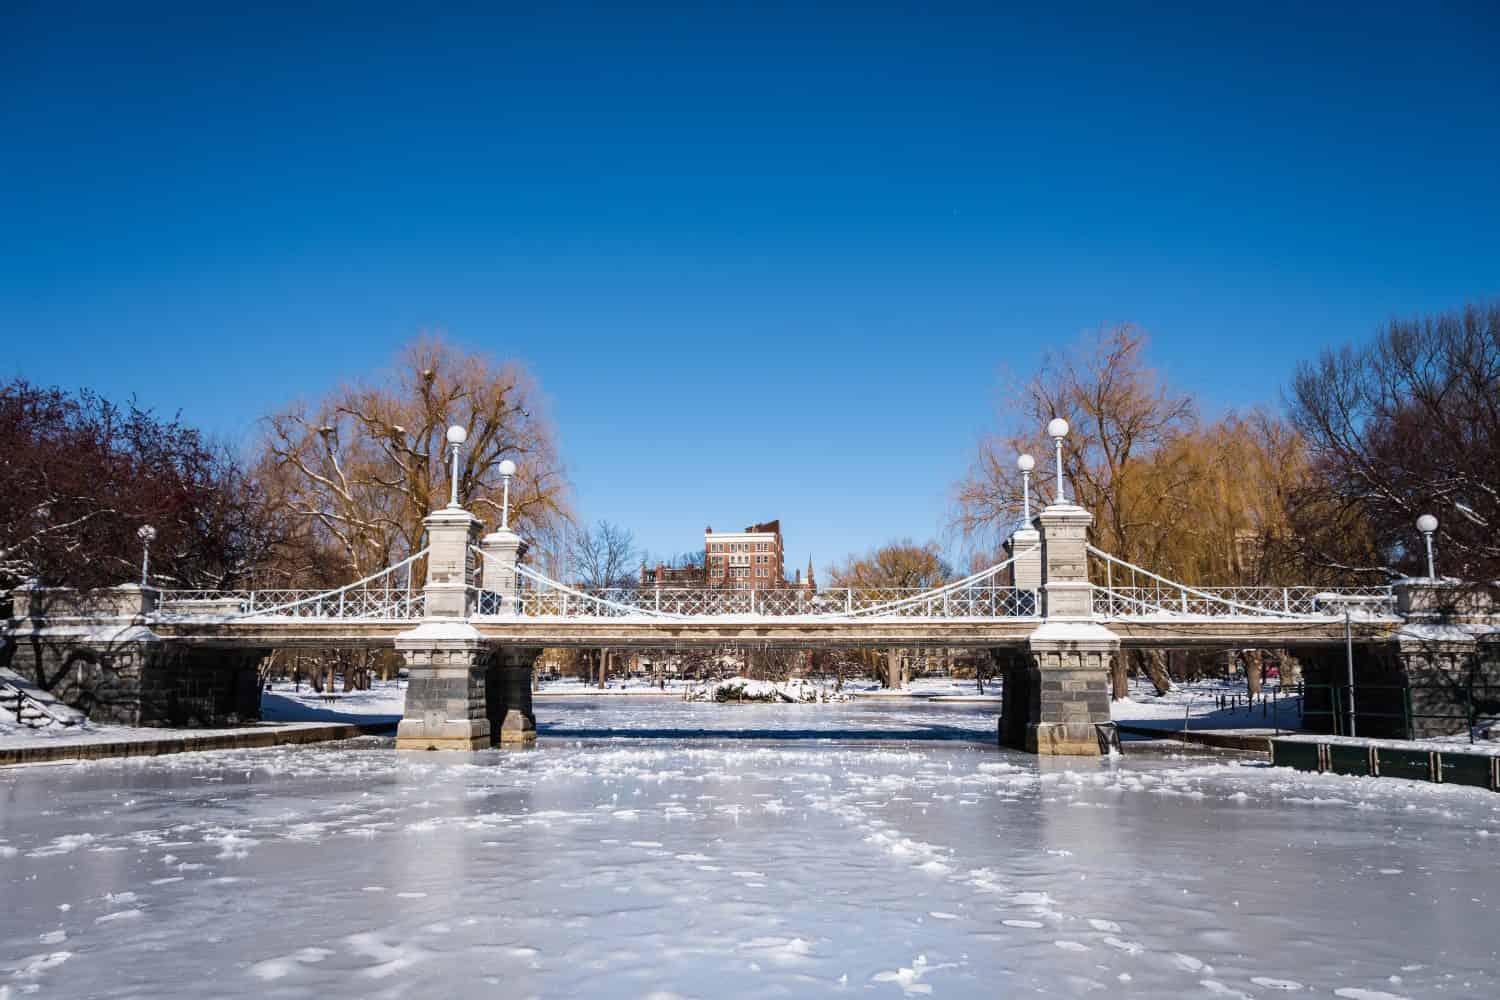 Inverno a Boston, neve e giornata soleggiata, ponte nel parco comune.  Clima tipico del Massachusetts in inverno